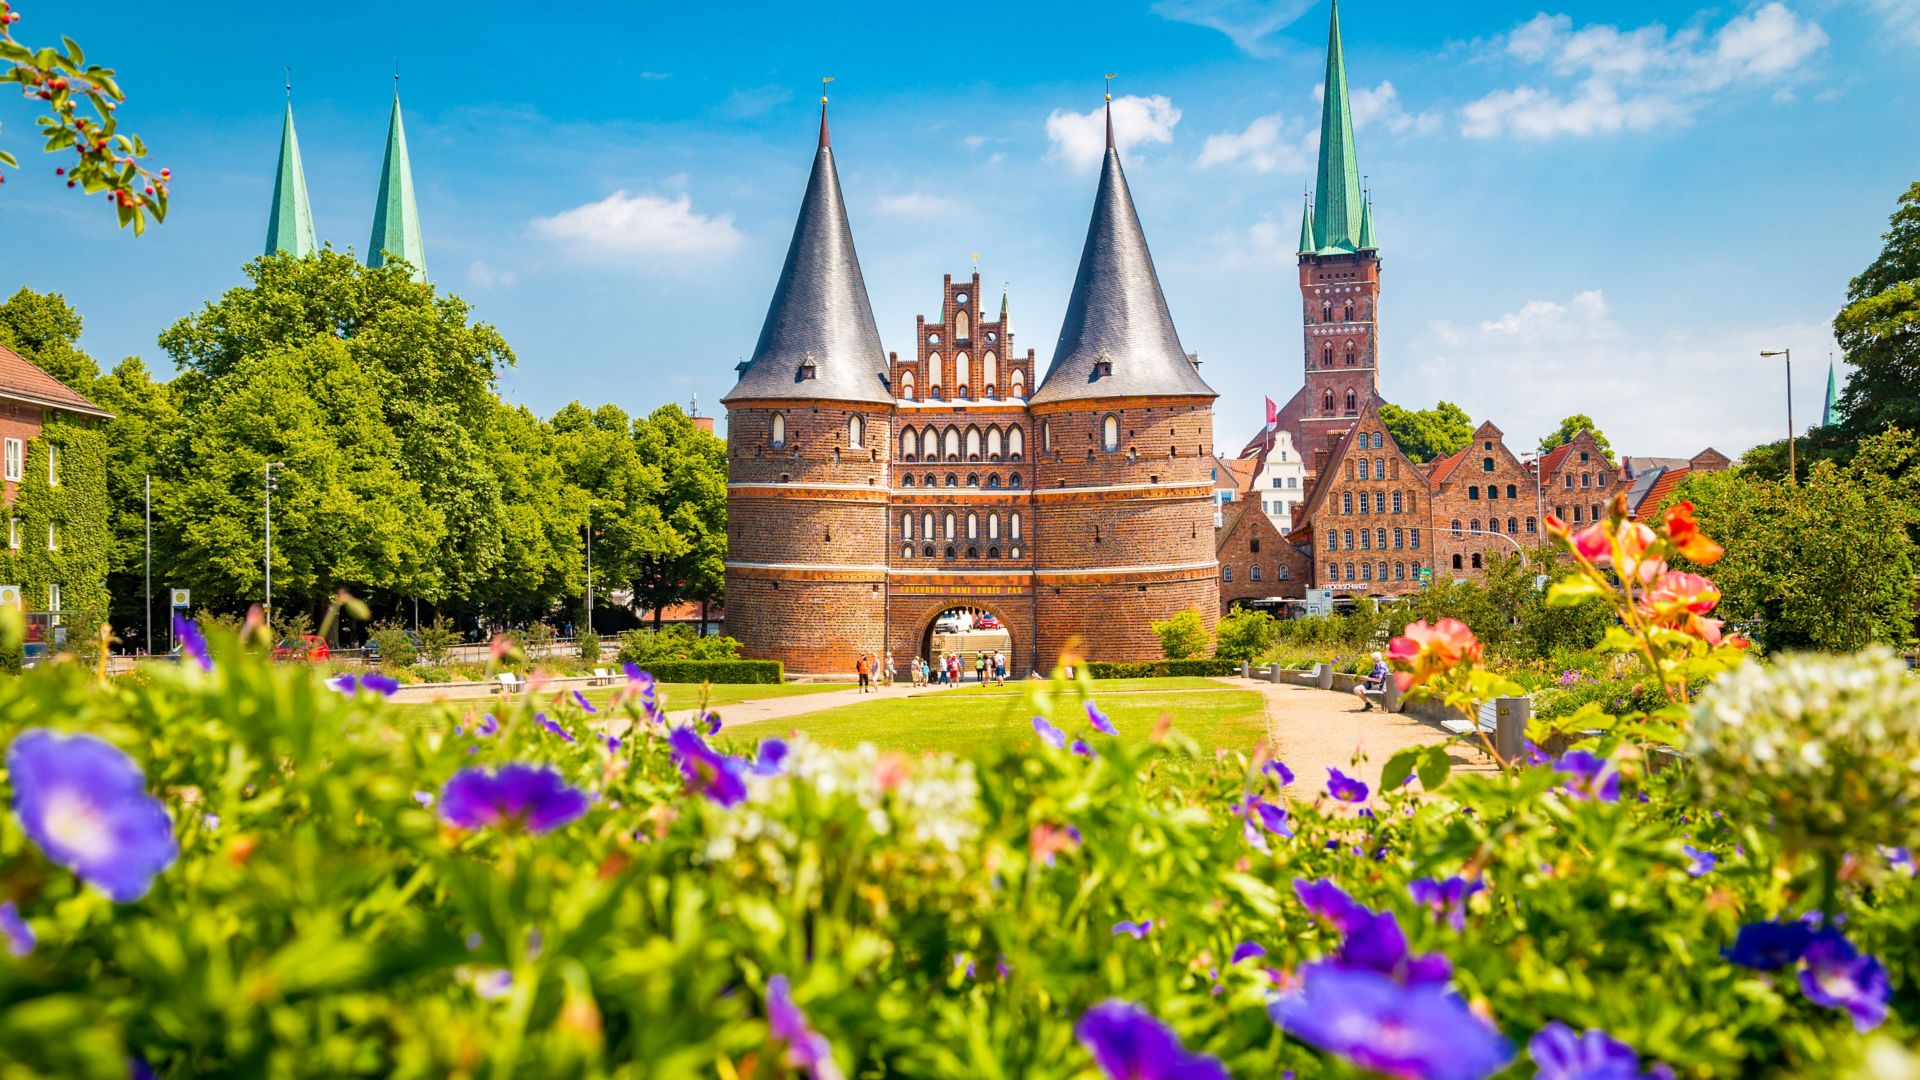 Historische stad Lübeck met de beroemde stadspoort Holstentor in de zomer, Sleeswijk-Holstein, Noord-Duitsland